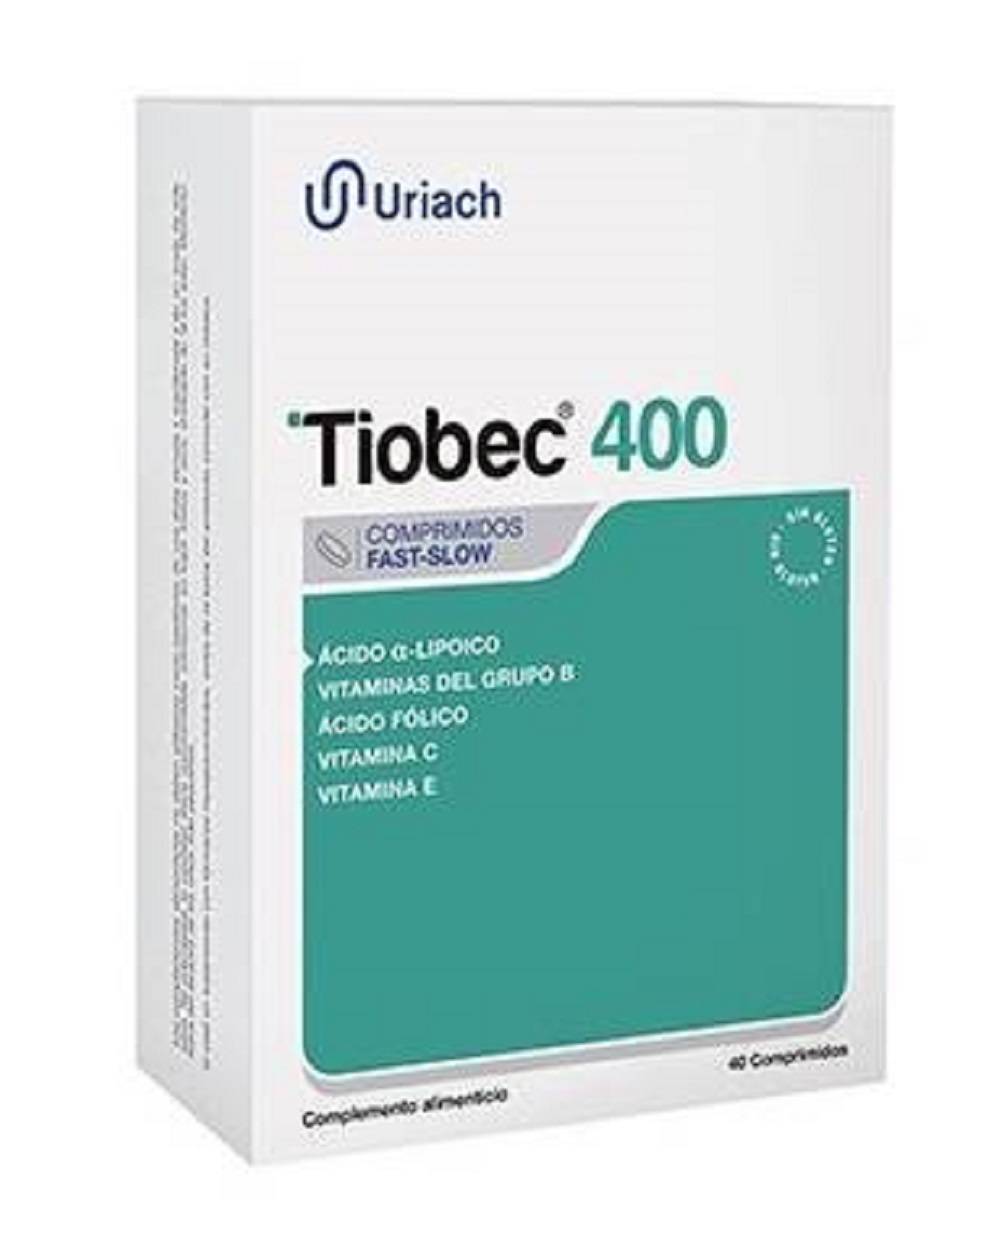 Tiobec 400 - 40 comprimidos n